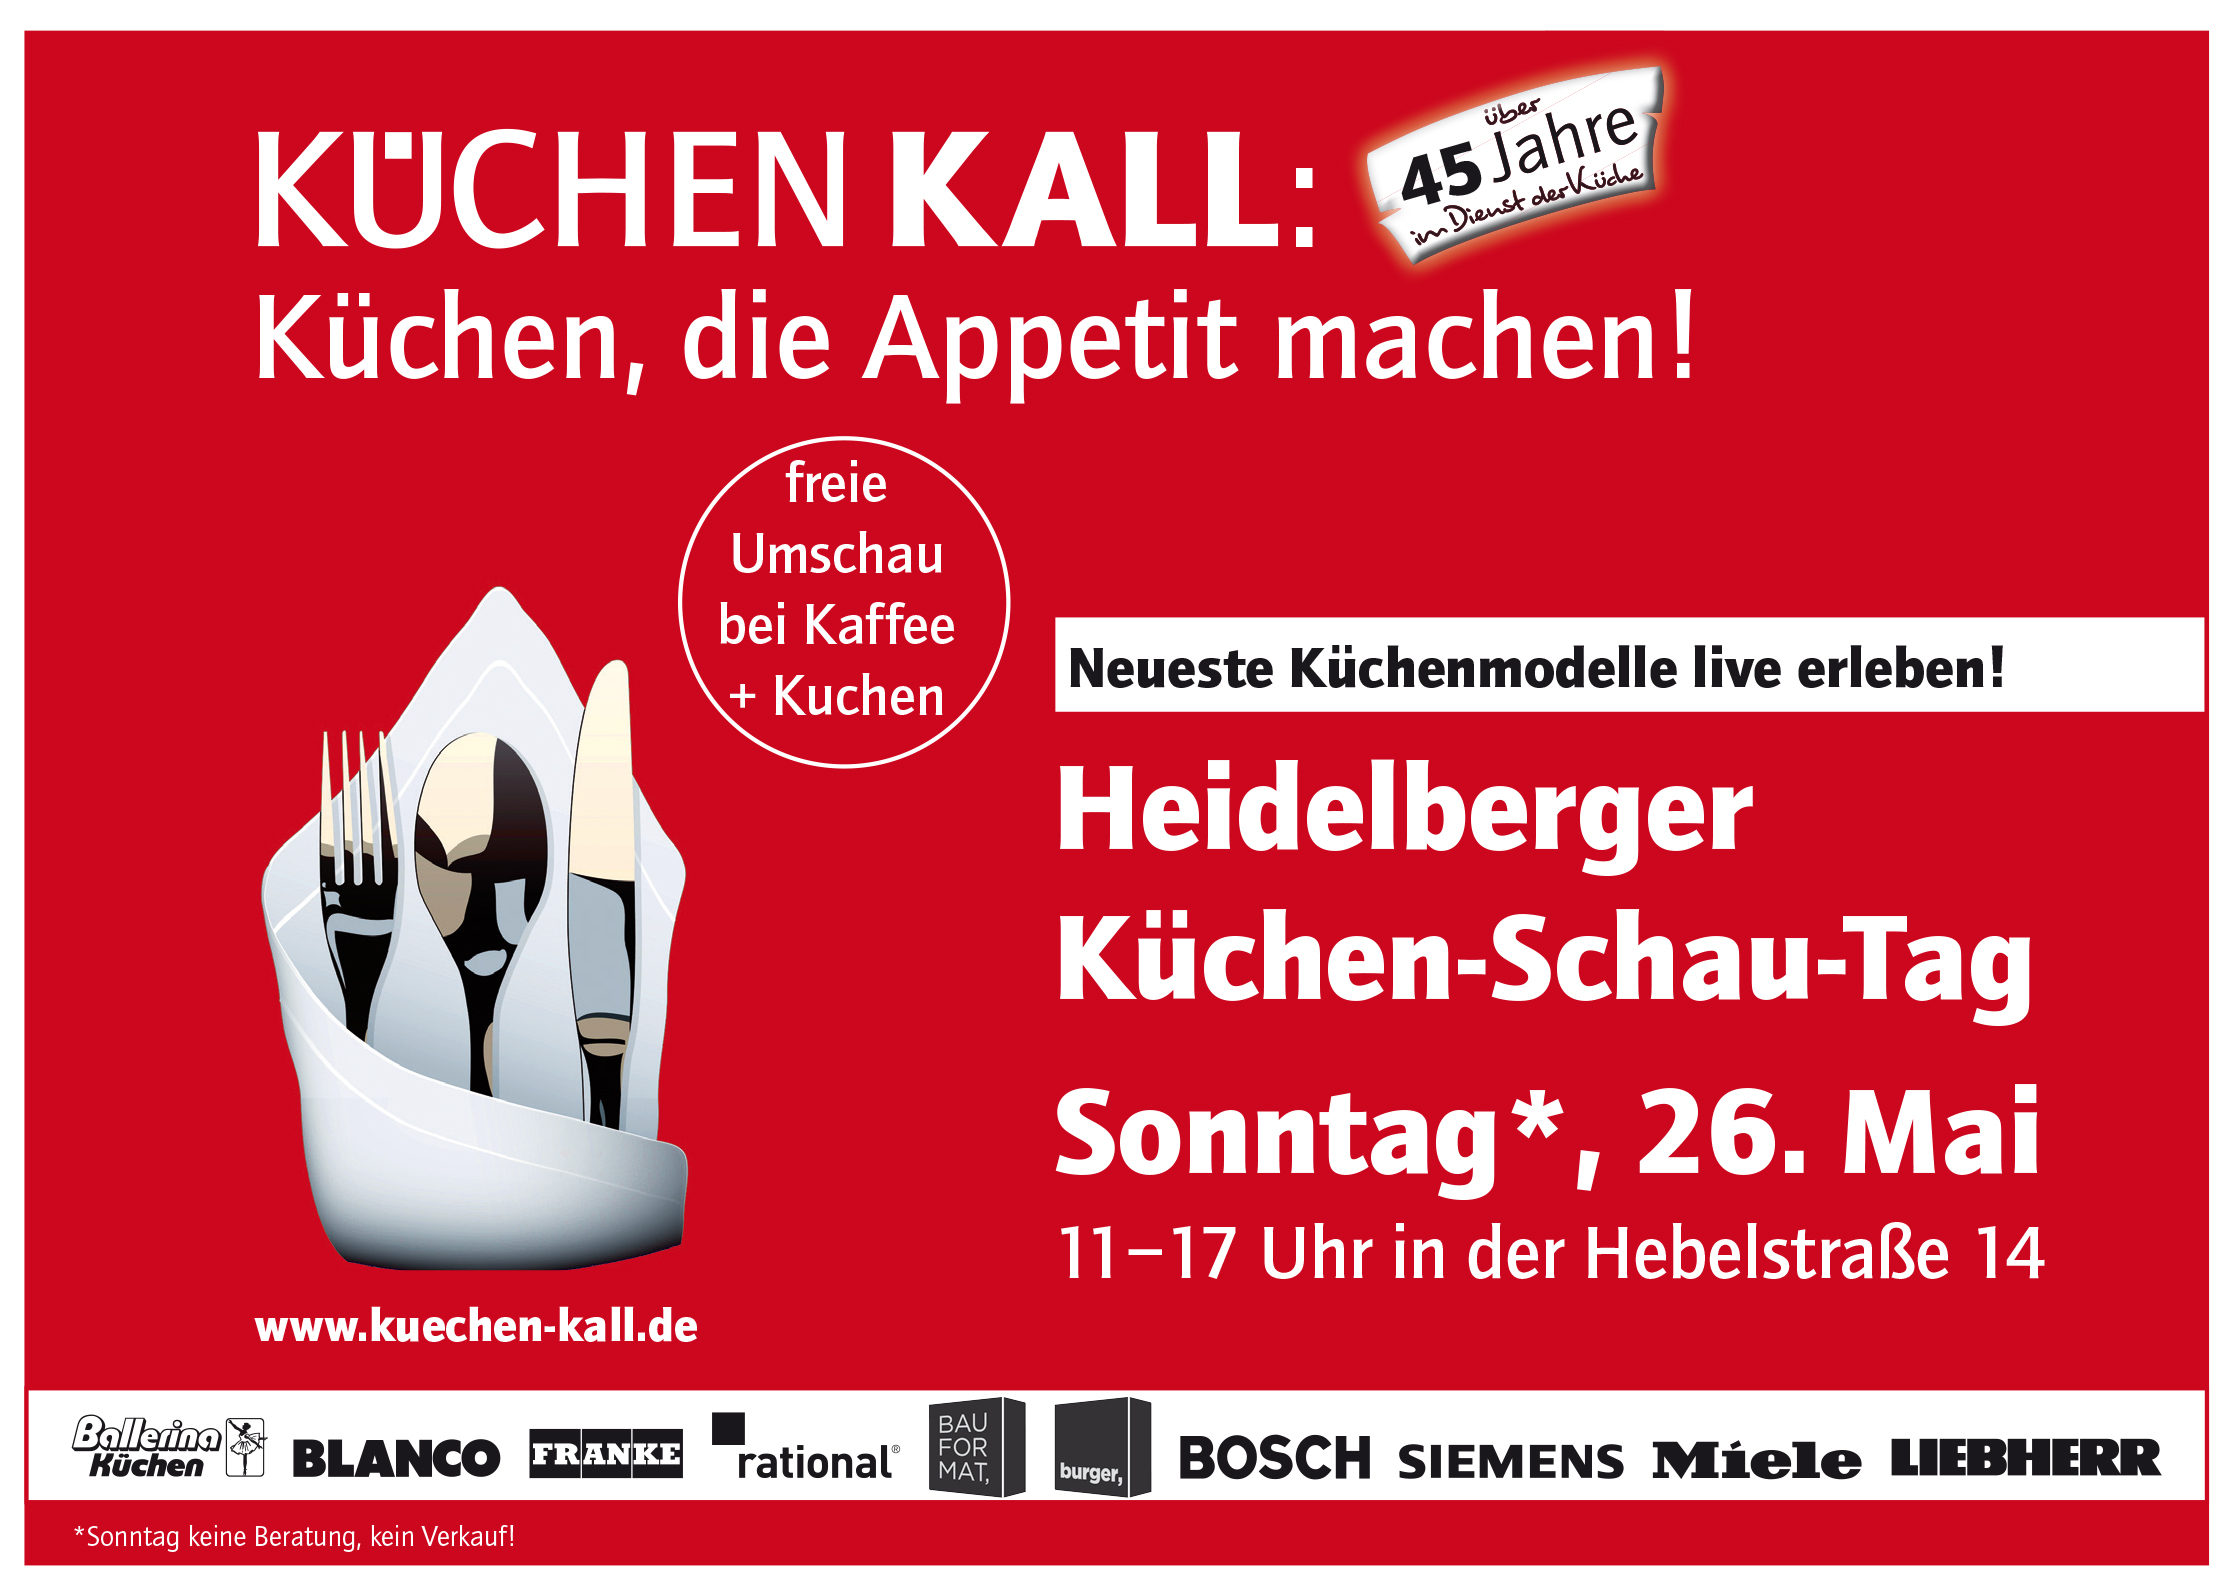 26.05.2019 Küchen-Schau-Tag in Heidelberg